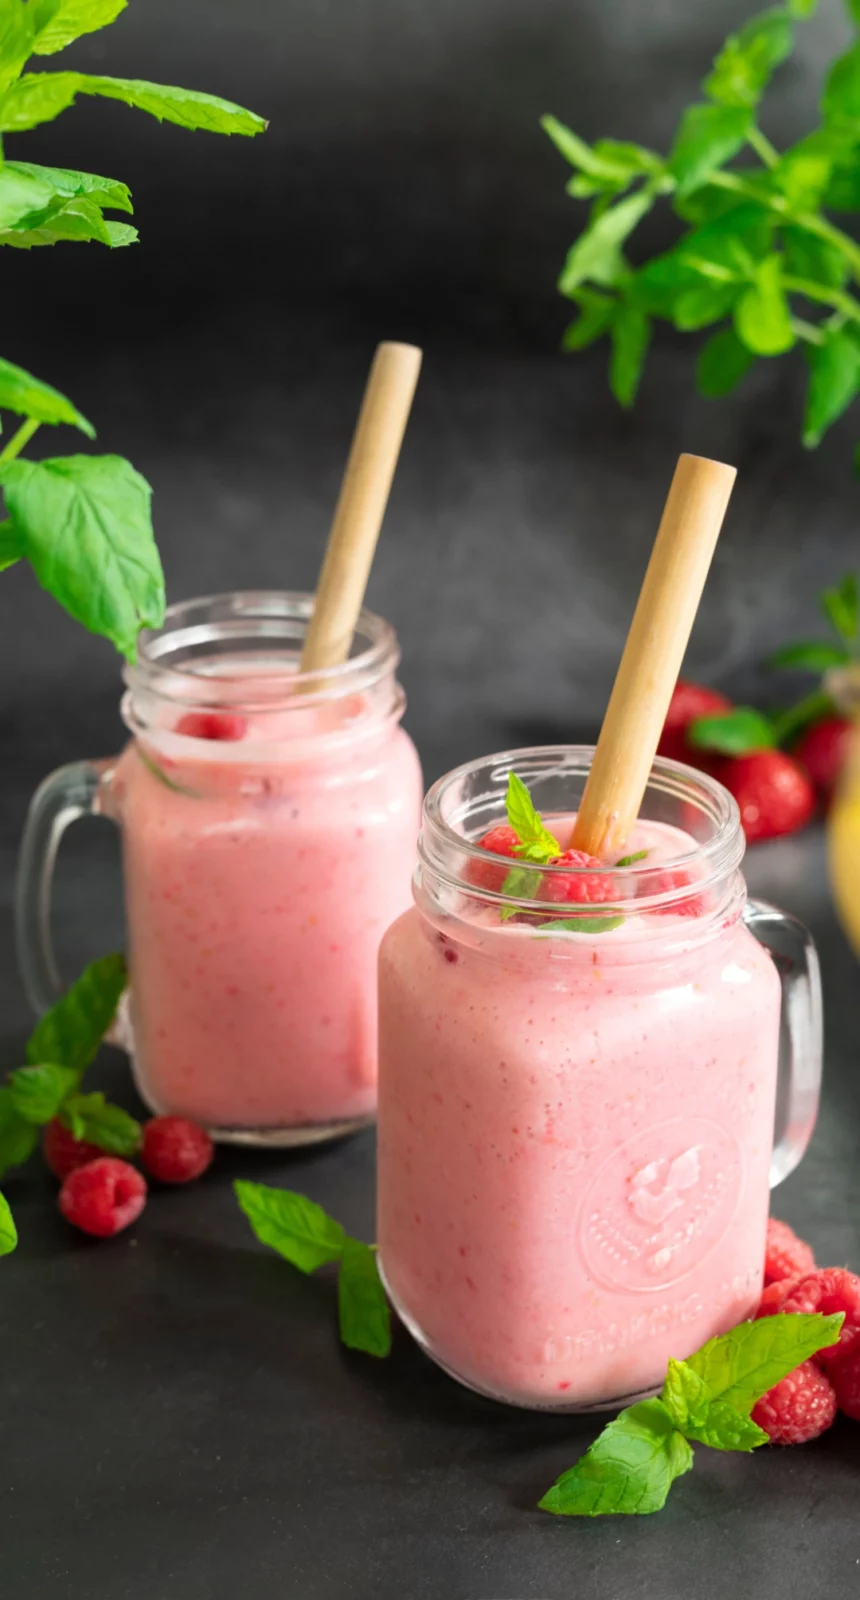 Vegansk smoothie med jordgubb, hallon och banan. Serverad i glas med bambu-sugrör.